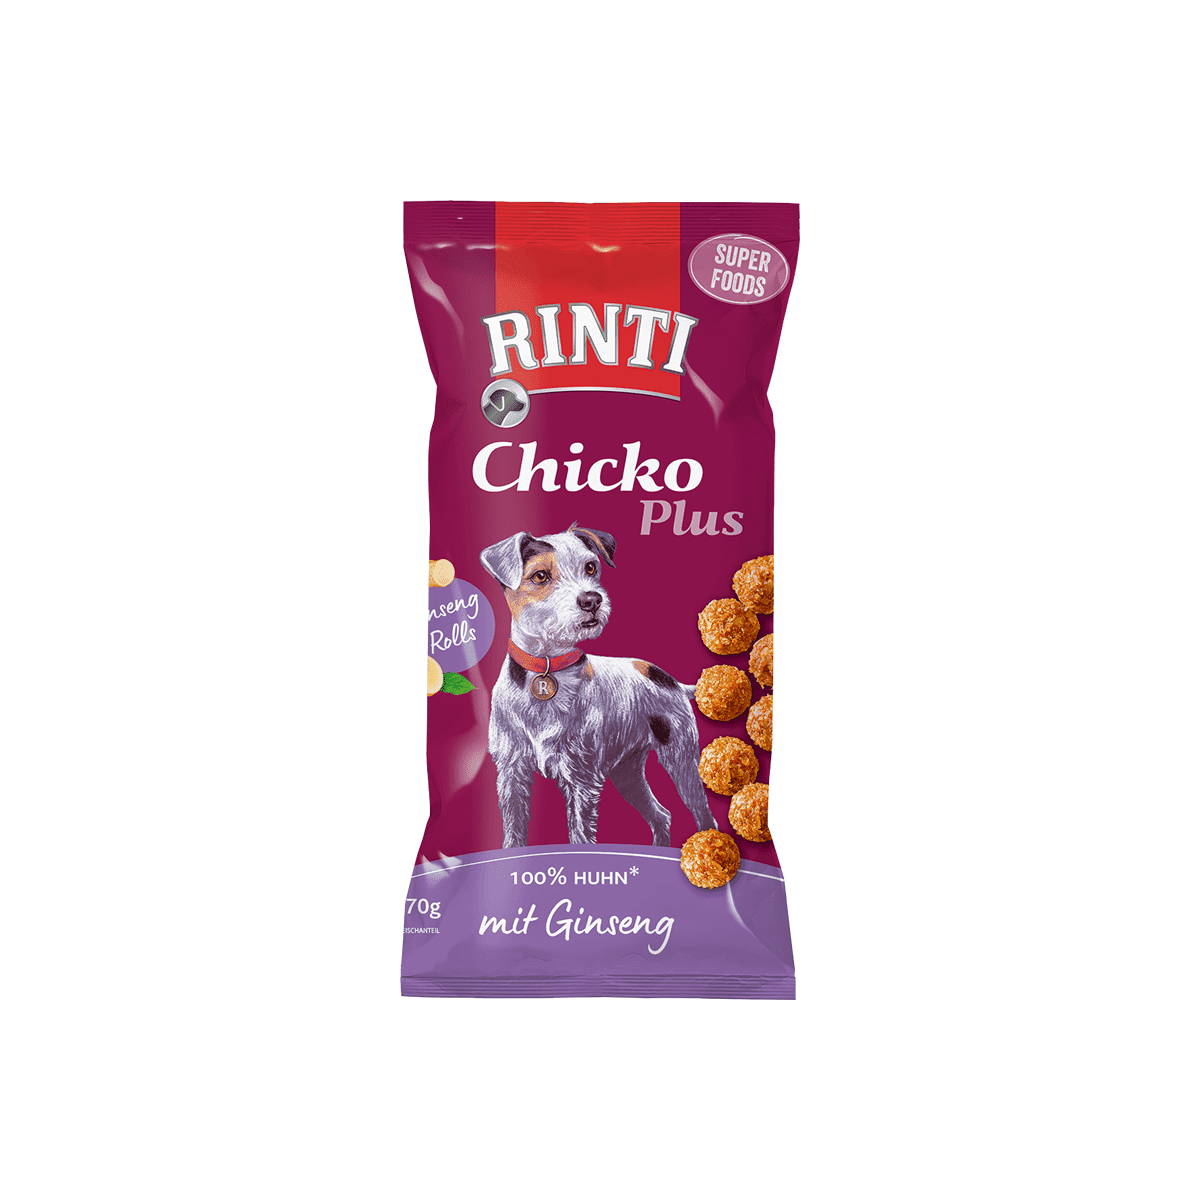 Artikel mit dem Namen Rinti Chicko Plus Superfoods mit Ginseng im Shop von zoo.de , dem Onlineshop für nachhaltiges Hundefutter und Katzenfutter.